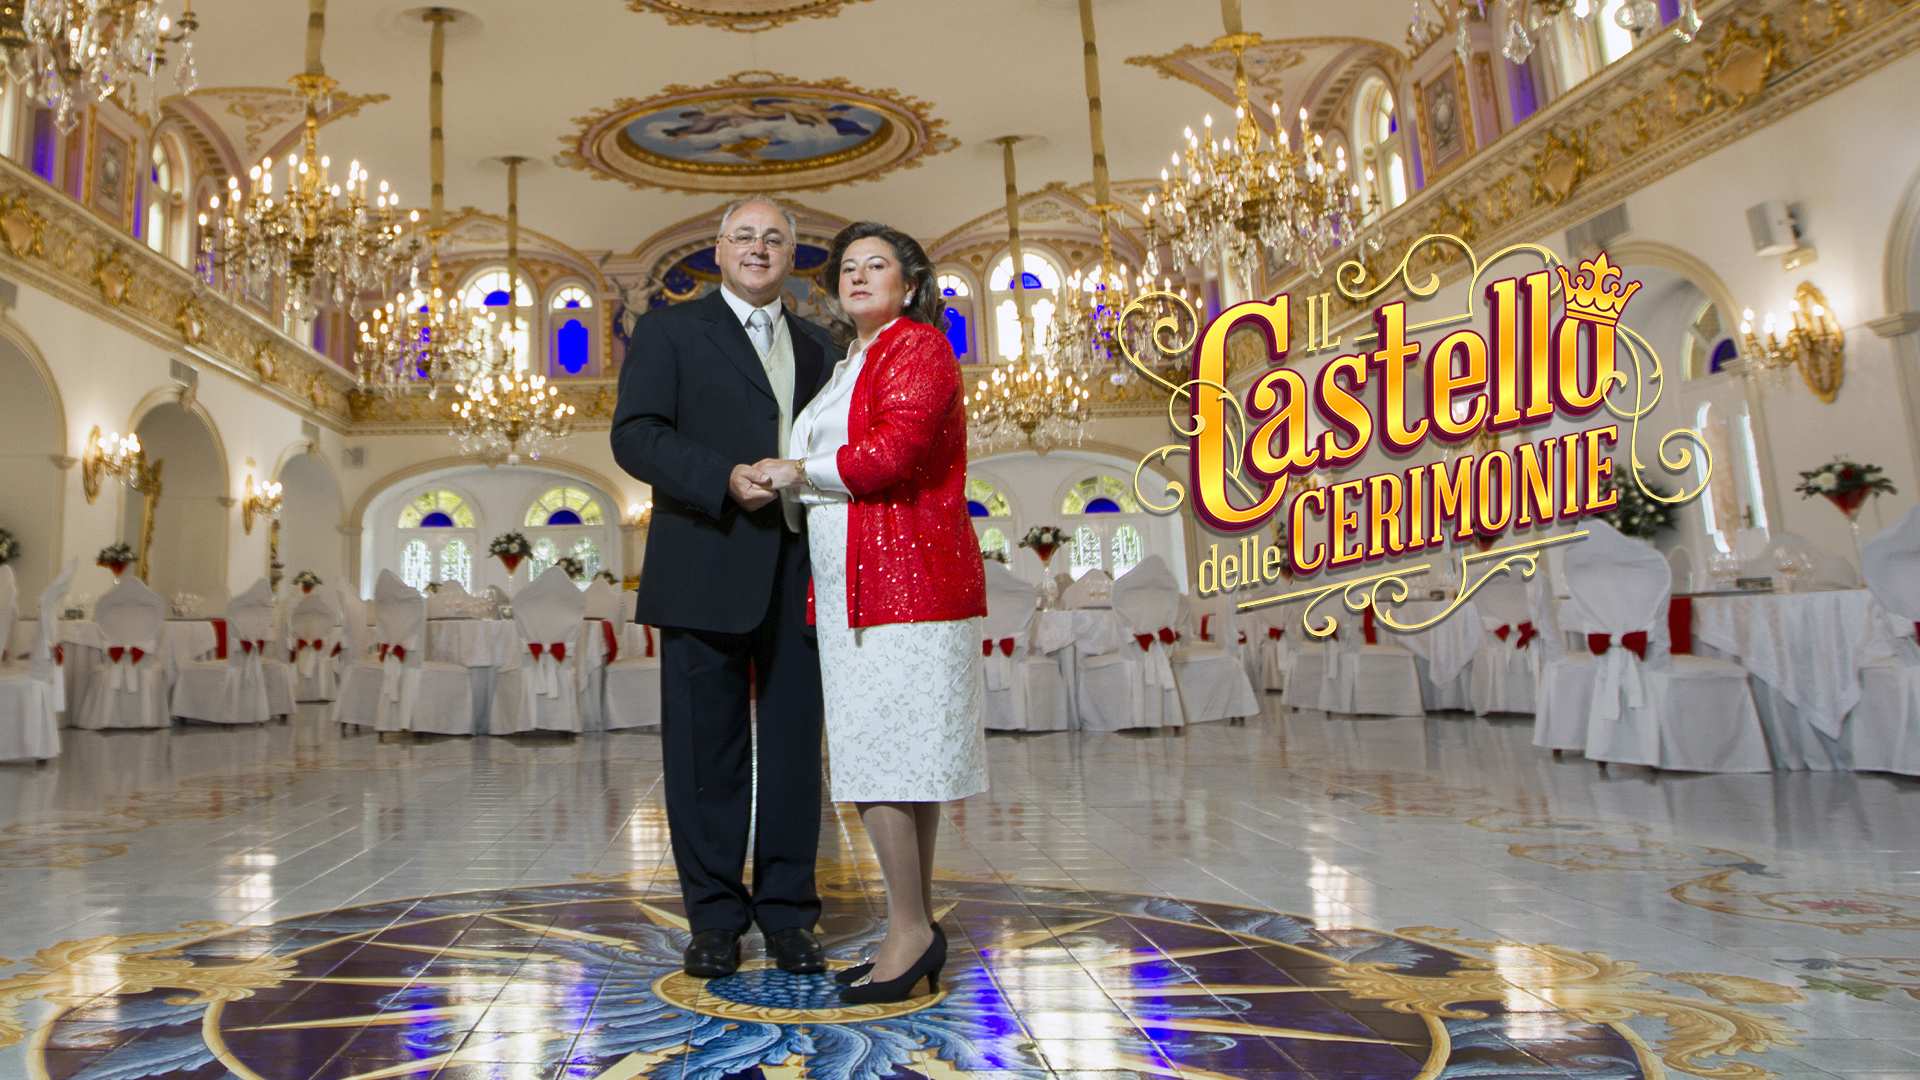 Il popolare programma tv "Il castello delle cerimonie"